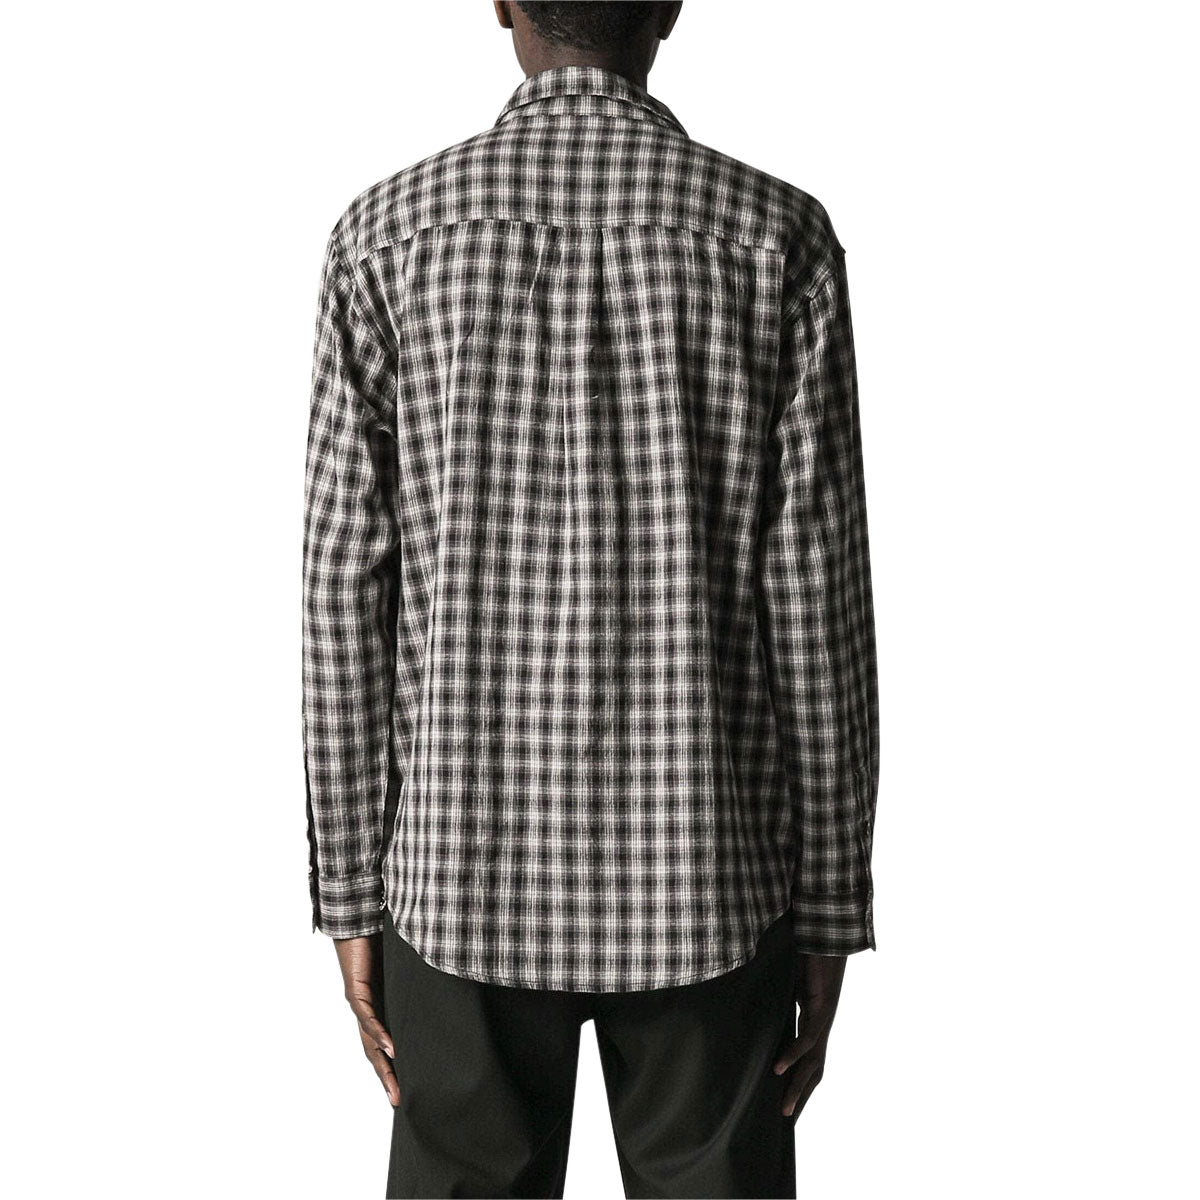 Former Vivian Check Long Sleeve Shirt - Grey Check image 2